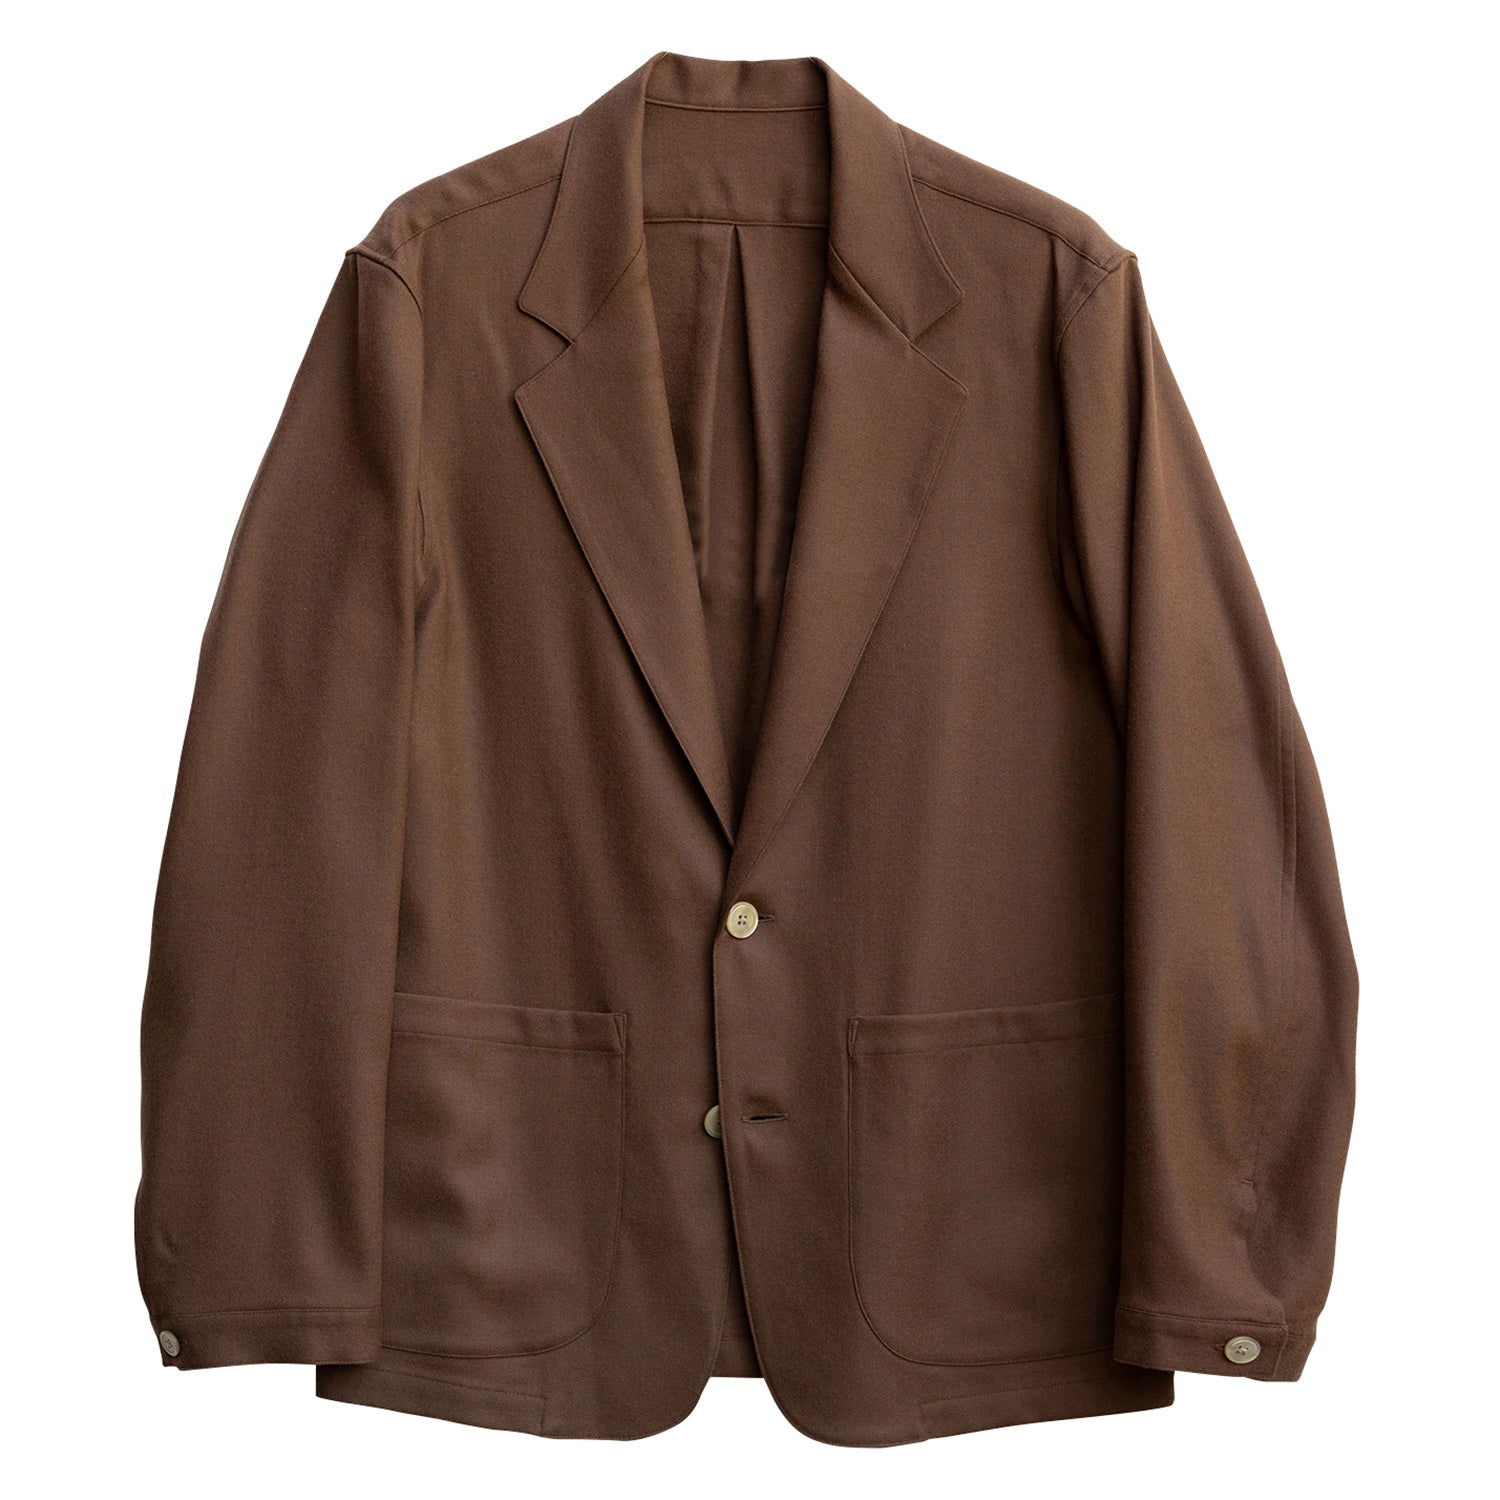 COLONY CLOTHING / ライトウェイトフランネル シャツジャケット 